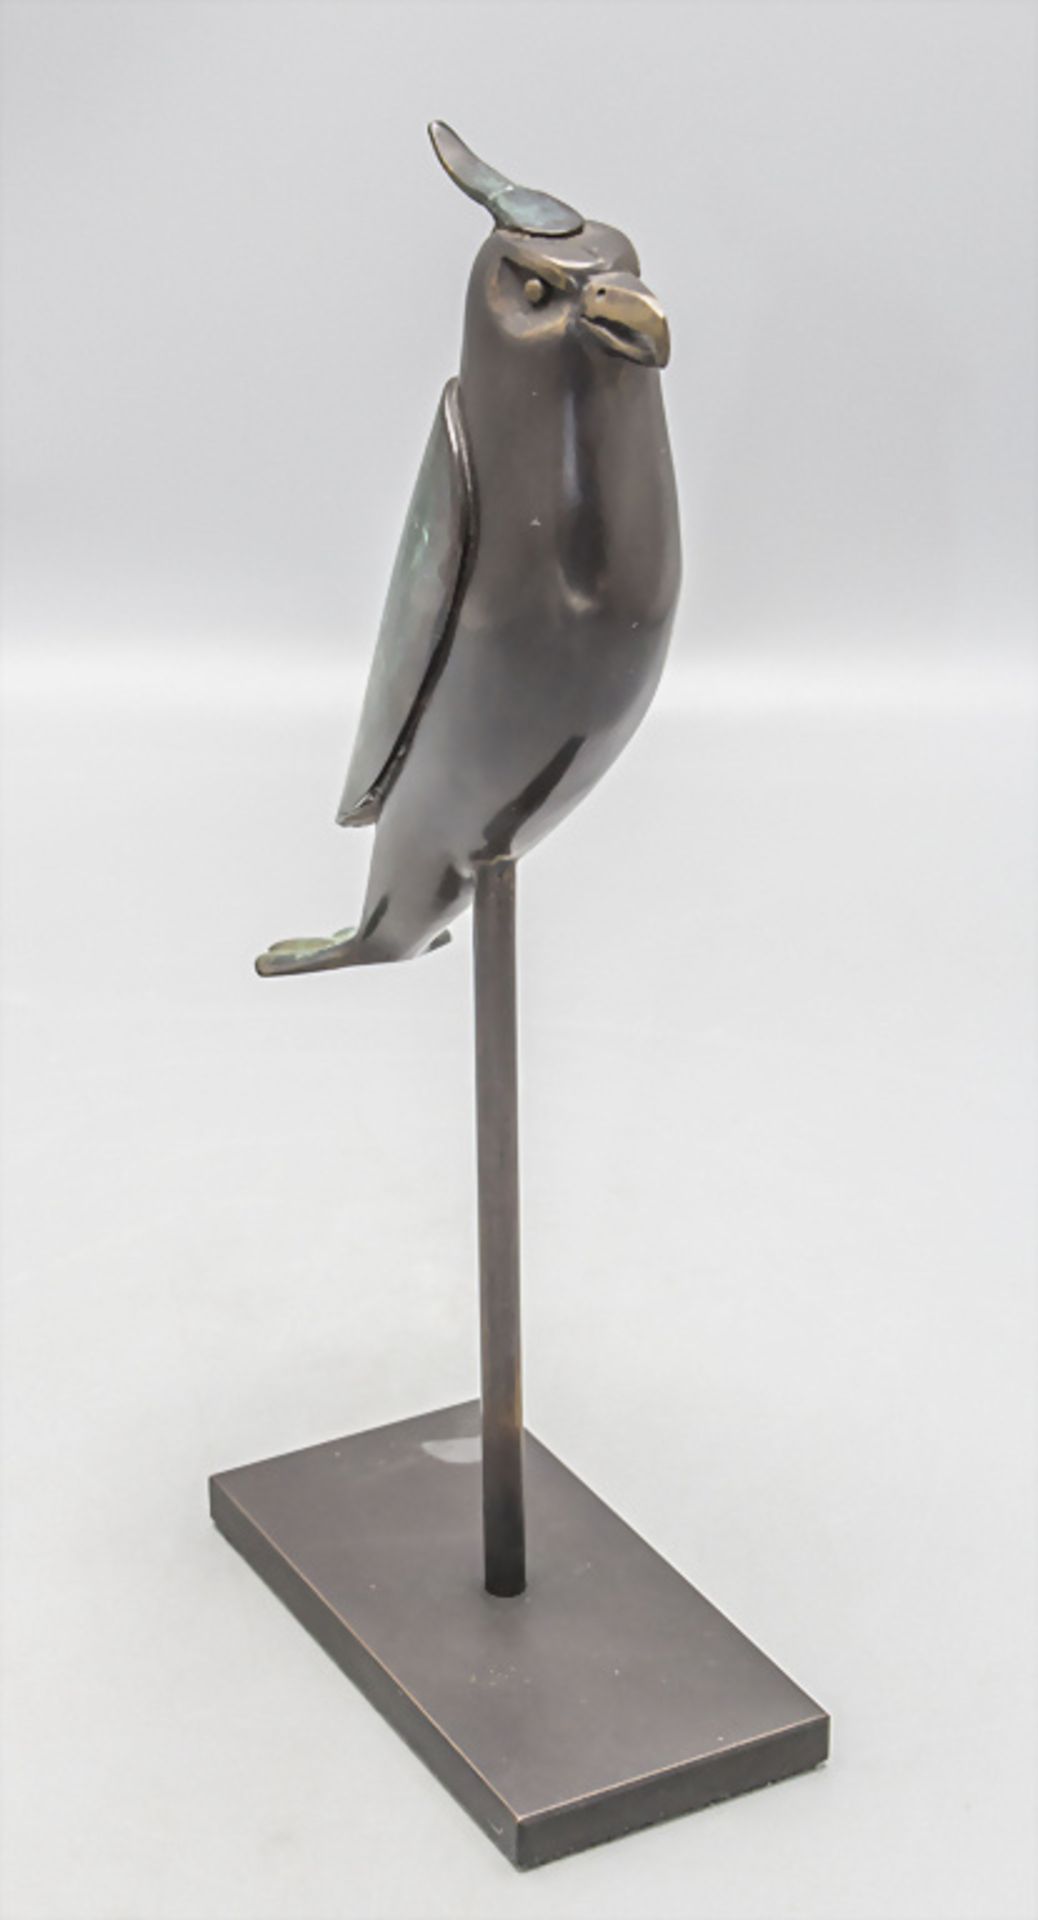 Paul WUNDERLICH (1927-2010), 'Kleiner Raubvogel' / Bronze scuplture 'Small bird of prey' - Bild 3 aus 7